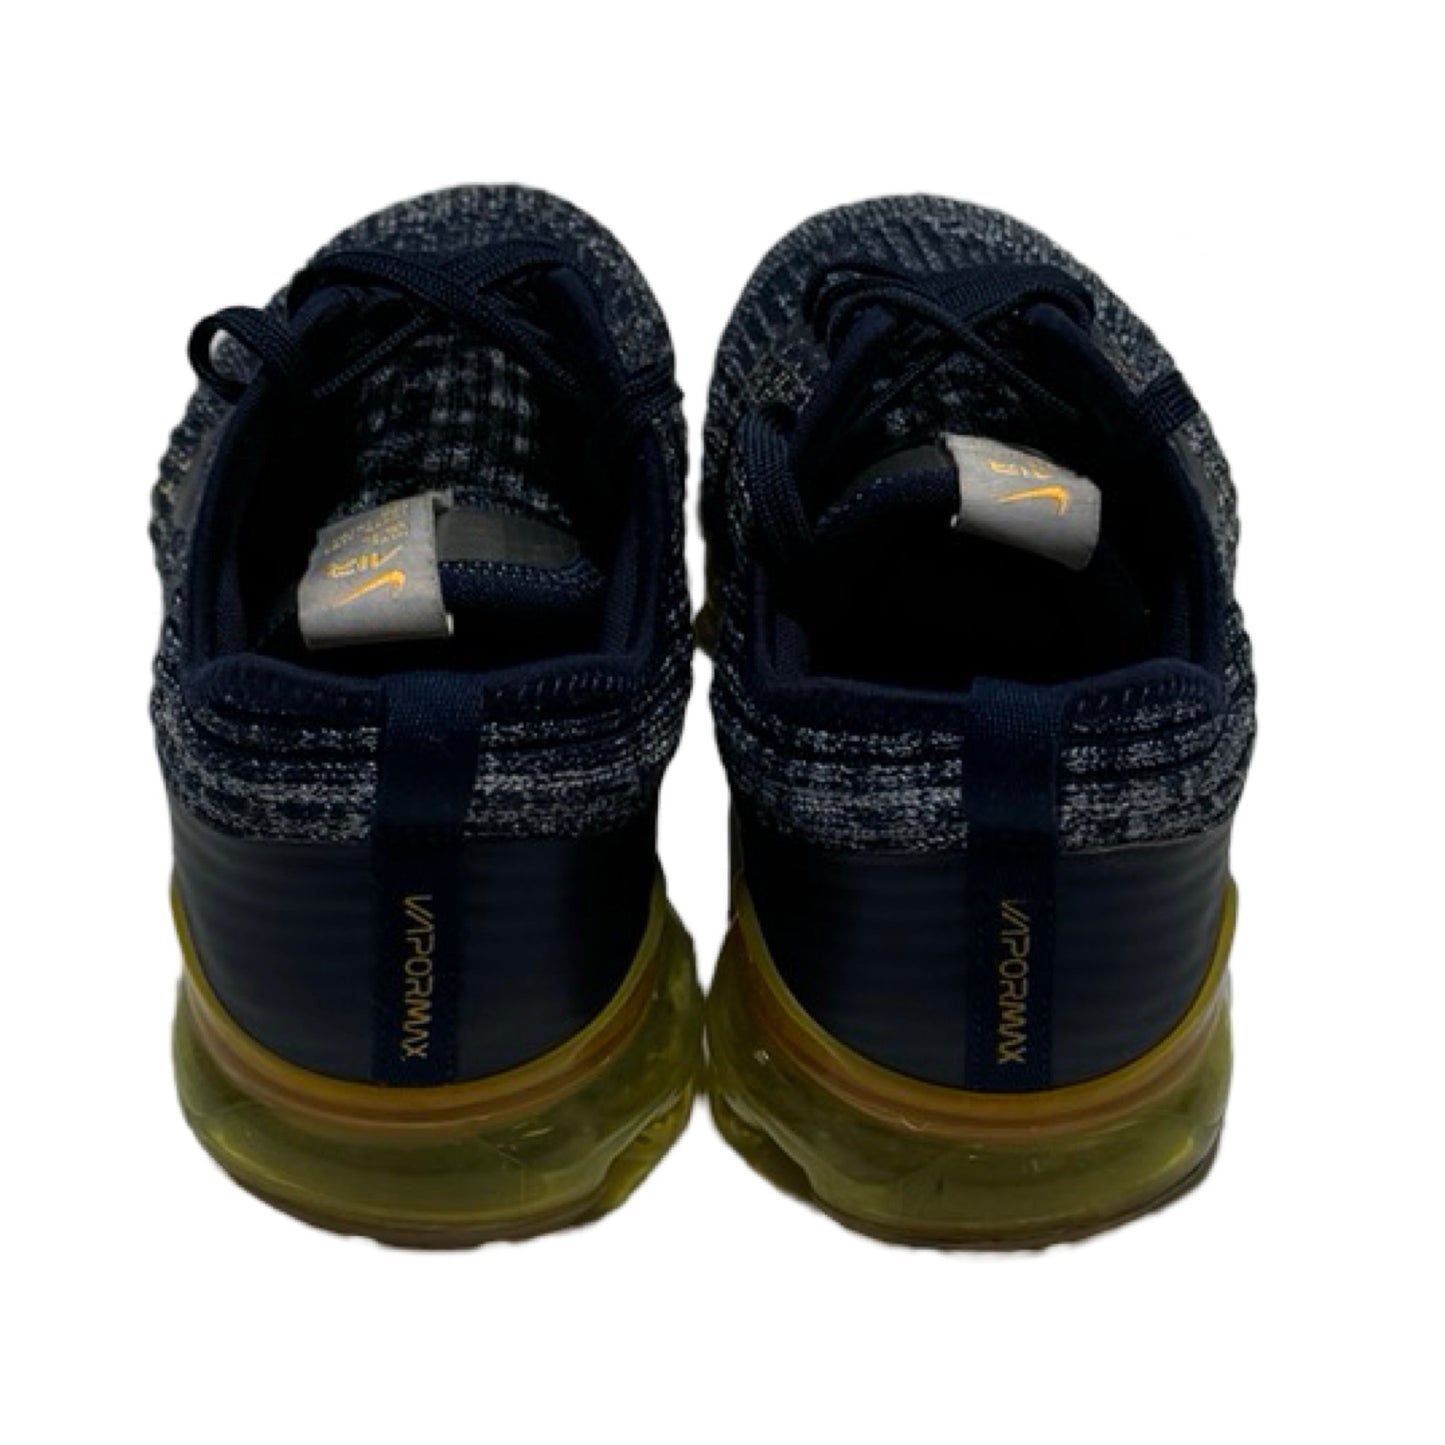 Blue Shoes Athletic Nike, Size 7.5